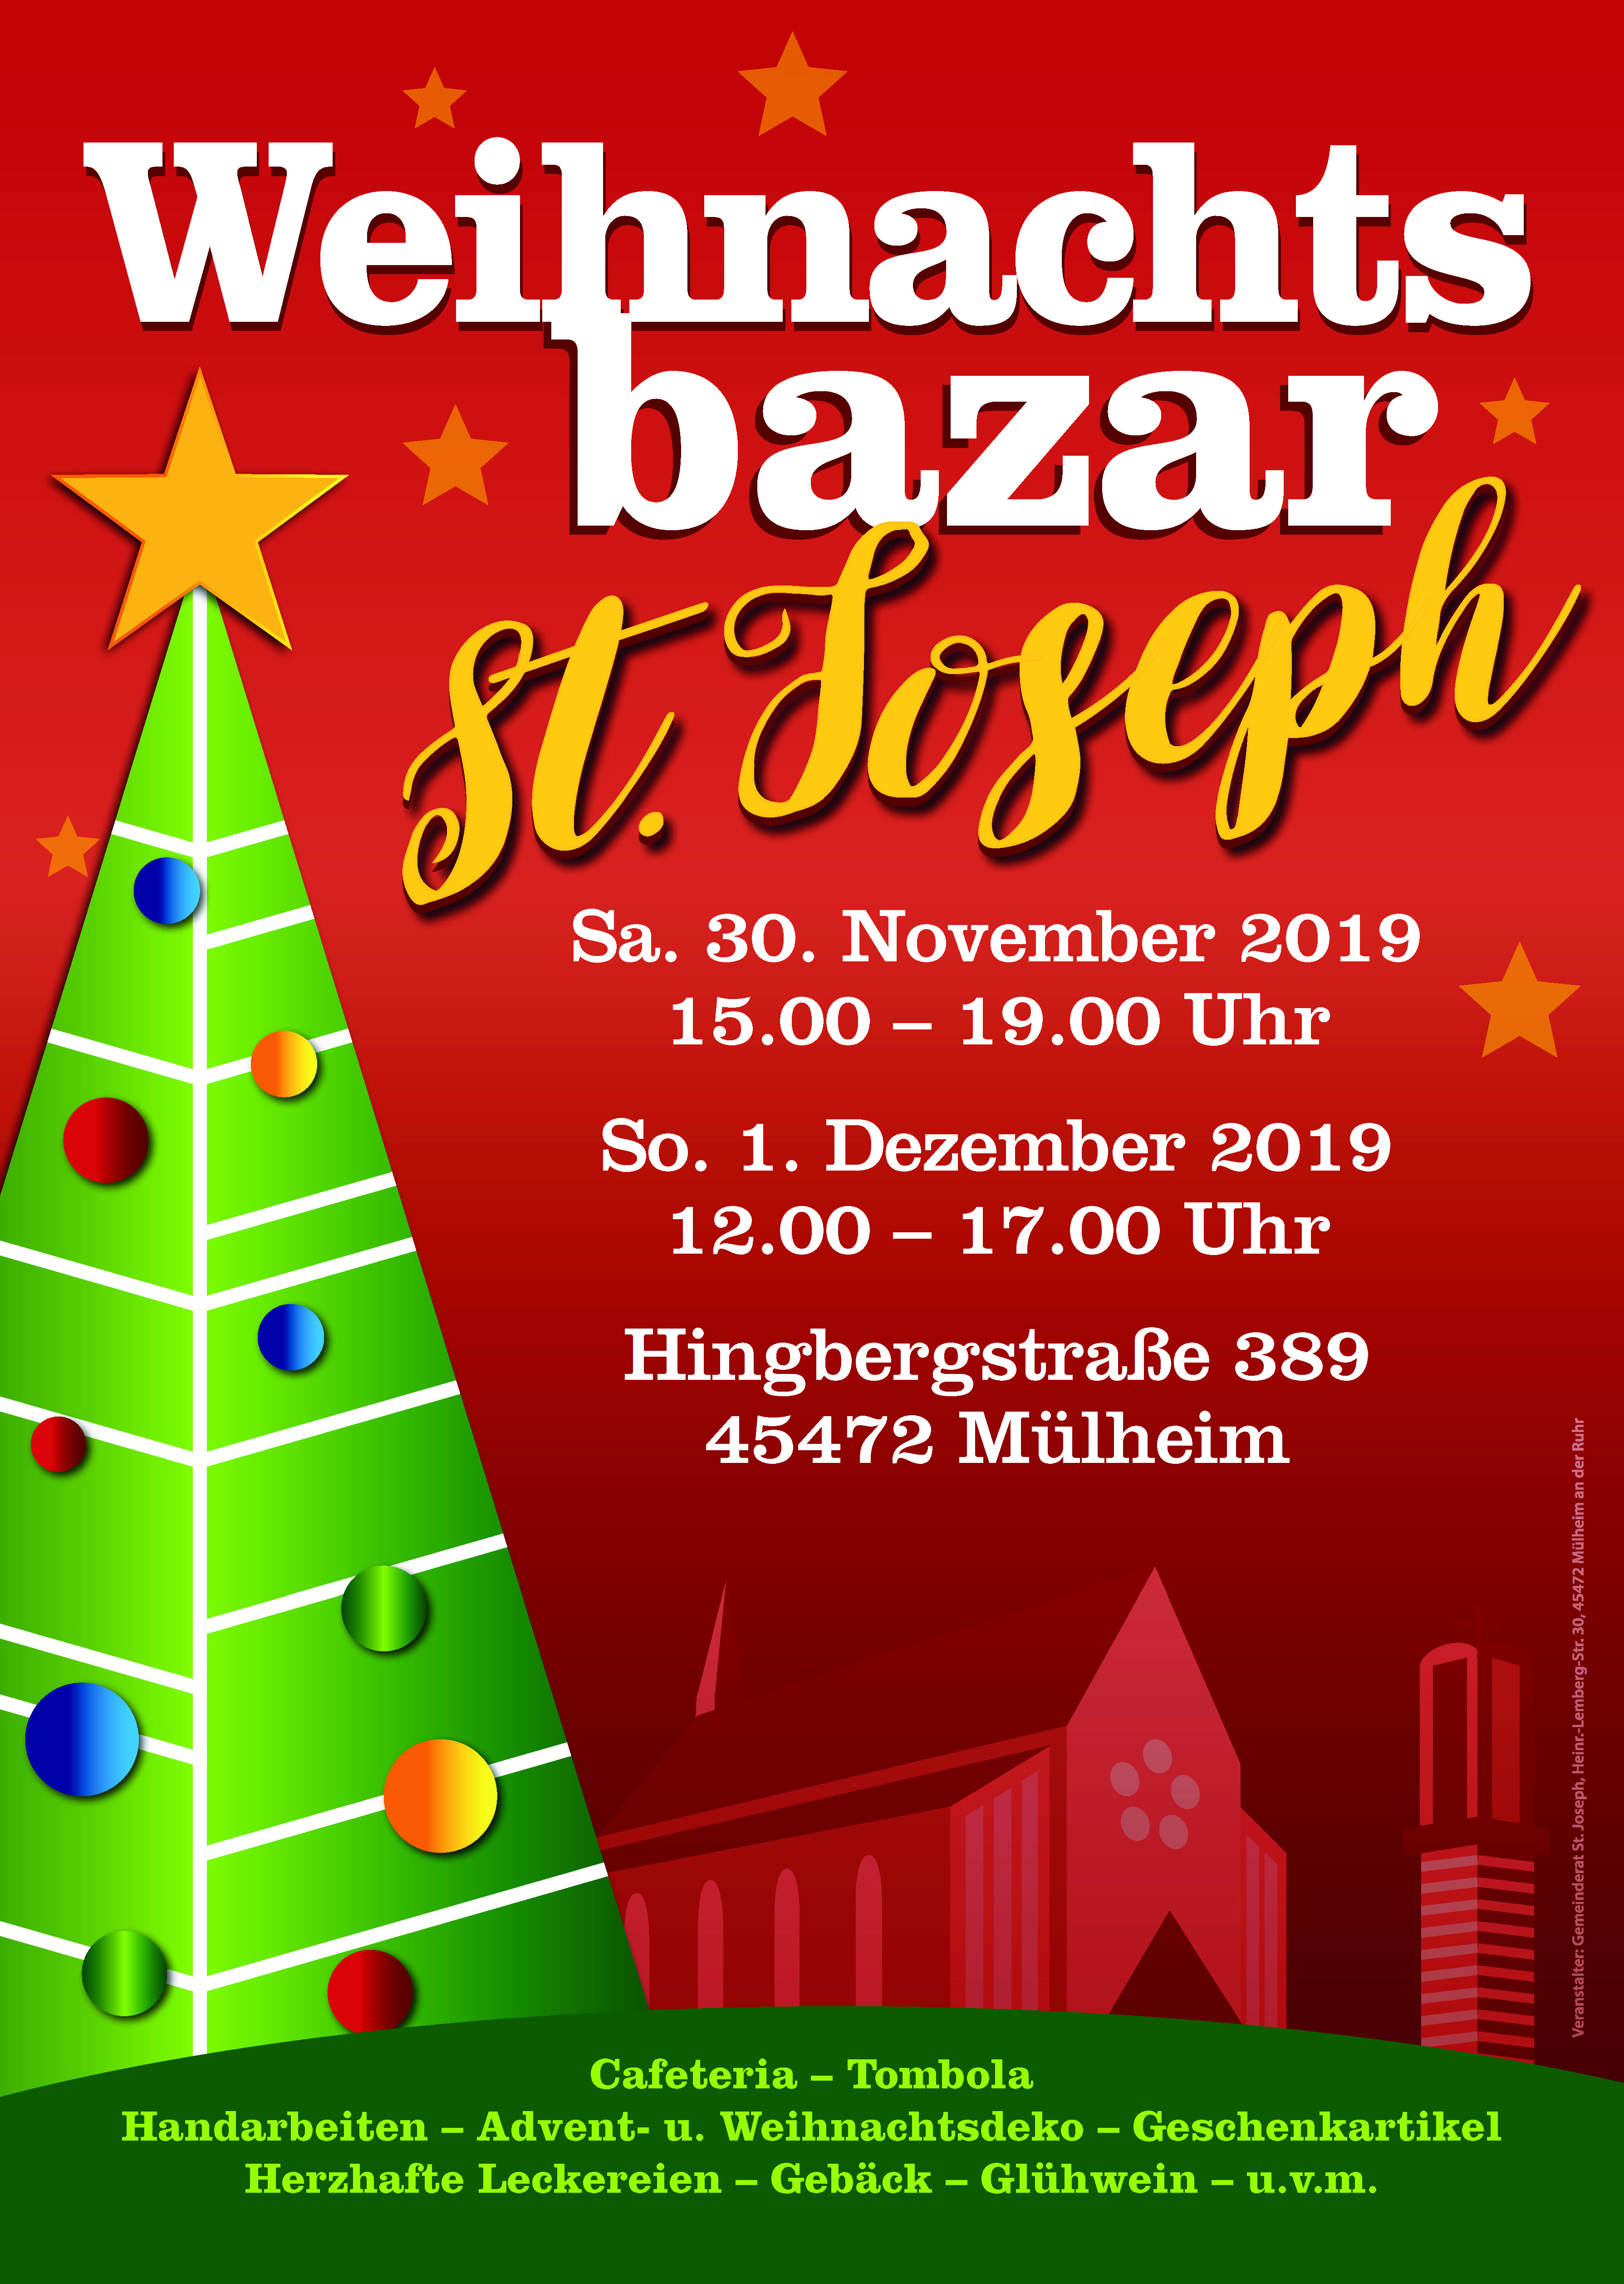 St Joseph Weihnachtsmarkt 2019 Plakat 303x426 RZ